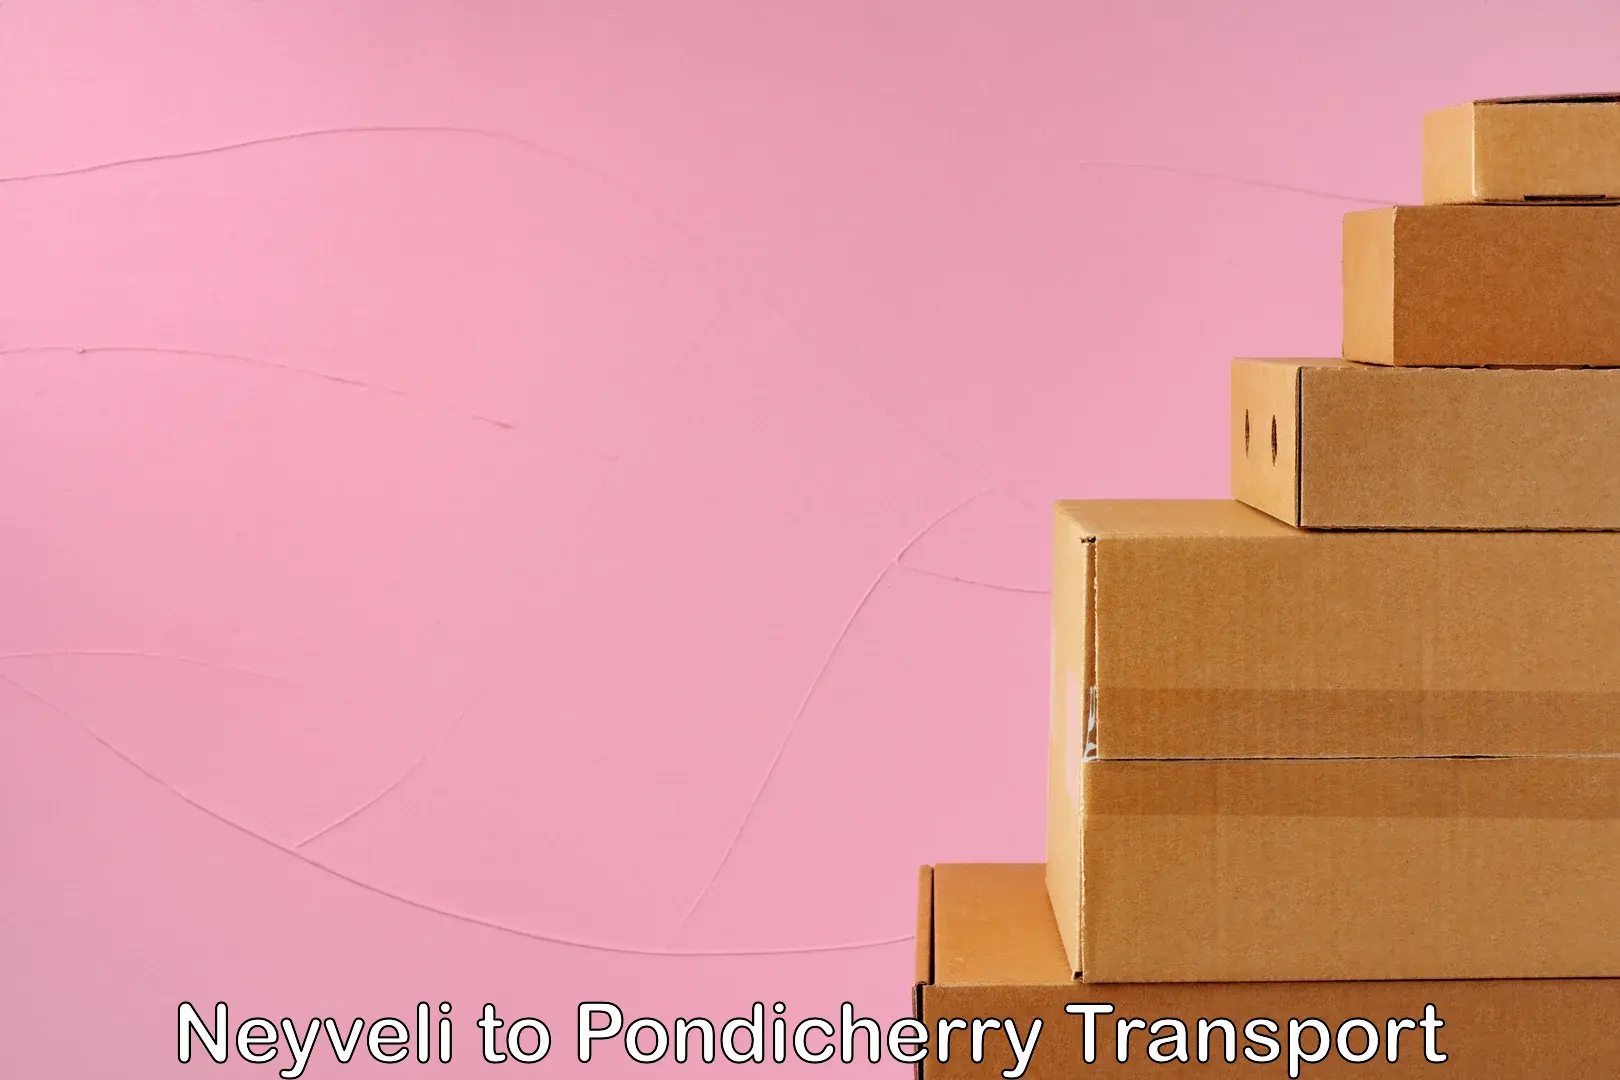 International cargo transportation services Neyveli to Pondicherry University